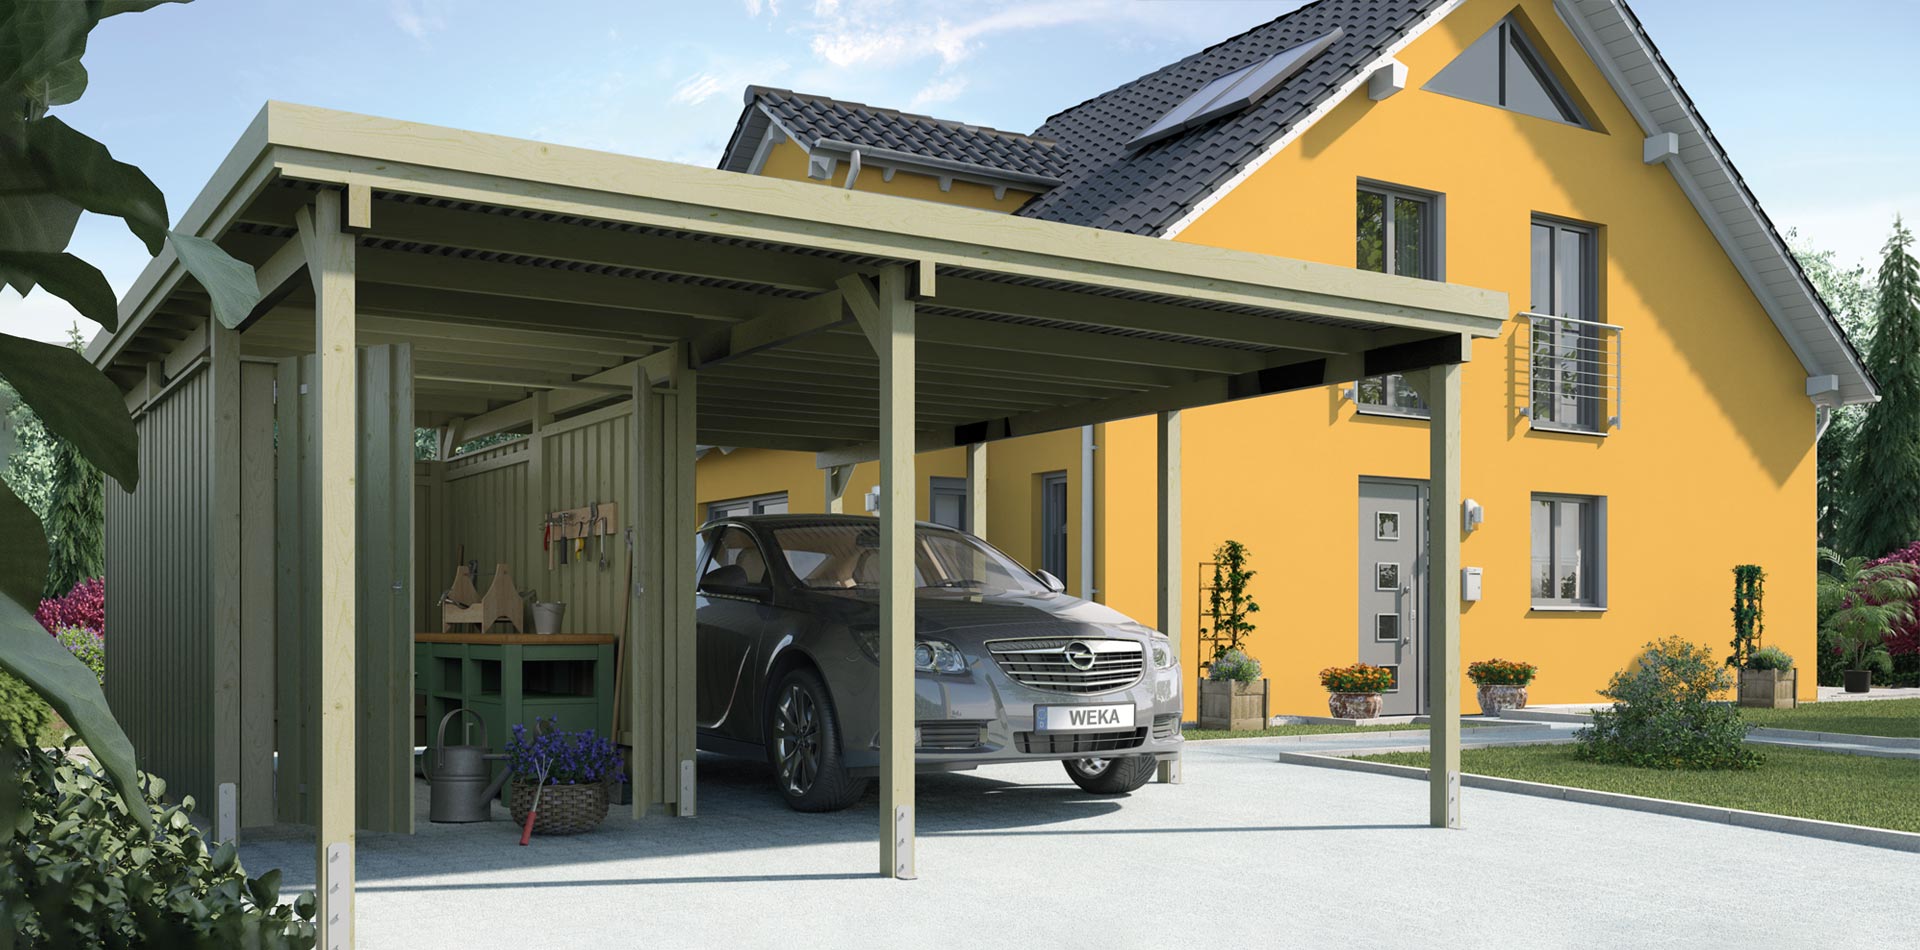 Kesseldruckimprägnierter Carport mit Geräteraum, Werkbank, grauem Auto und gelbem Einfamilienhaus